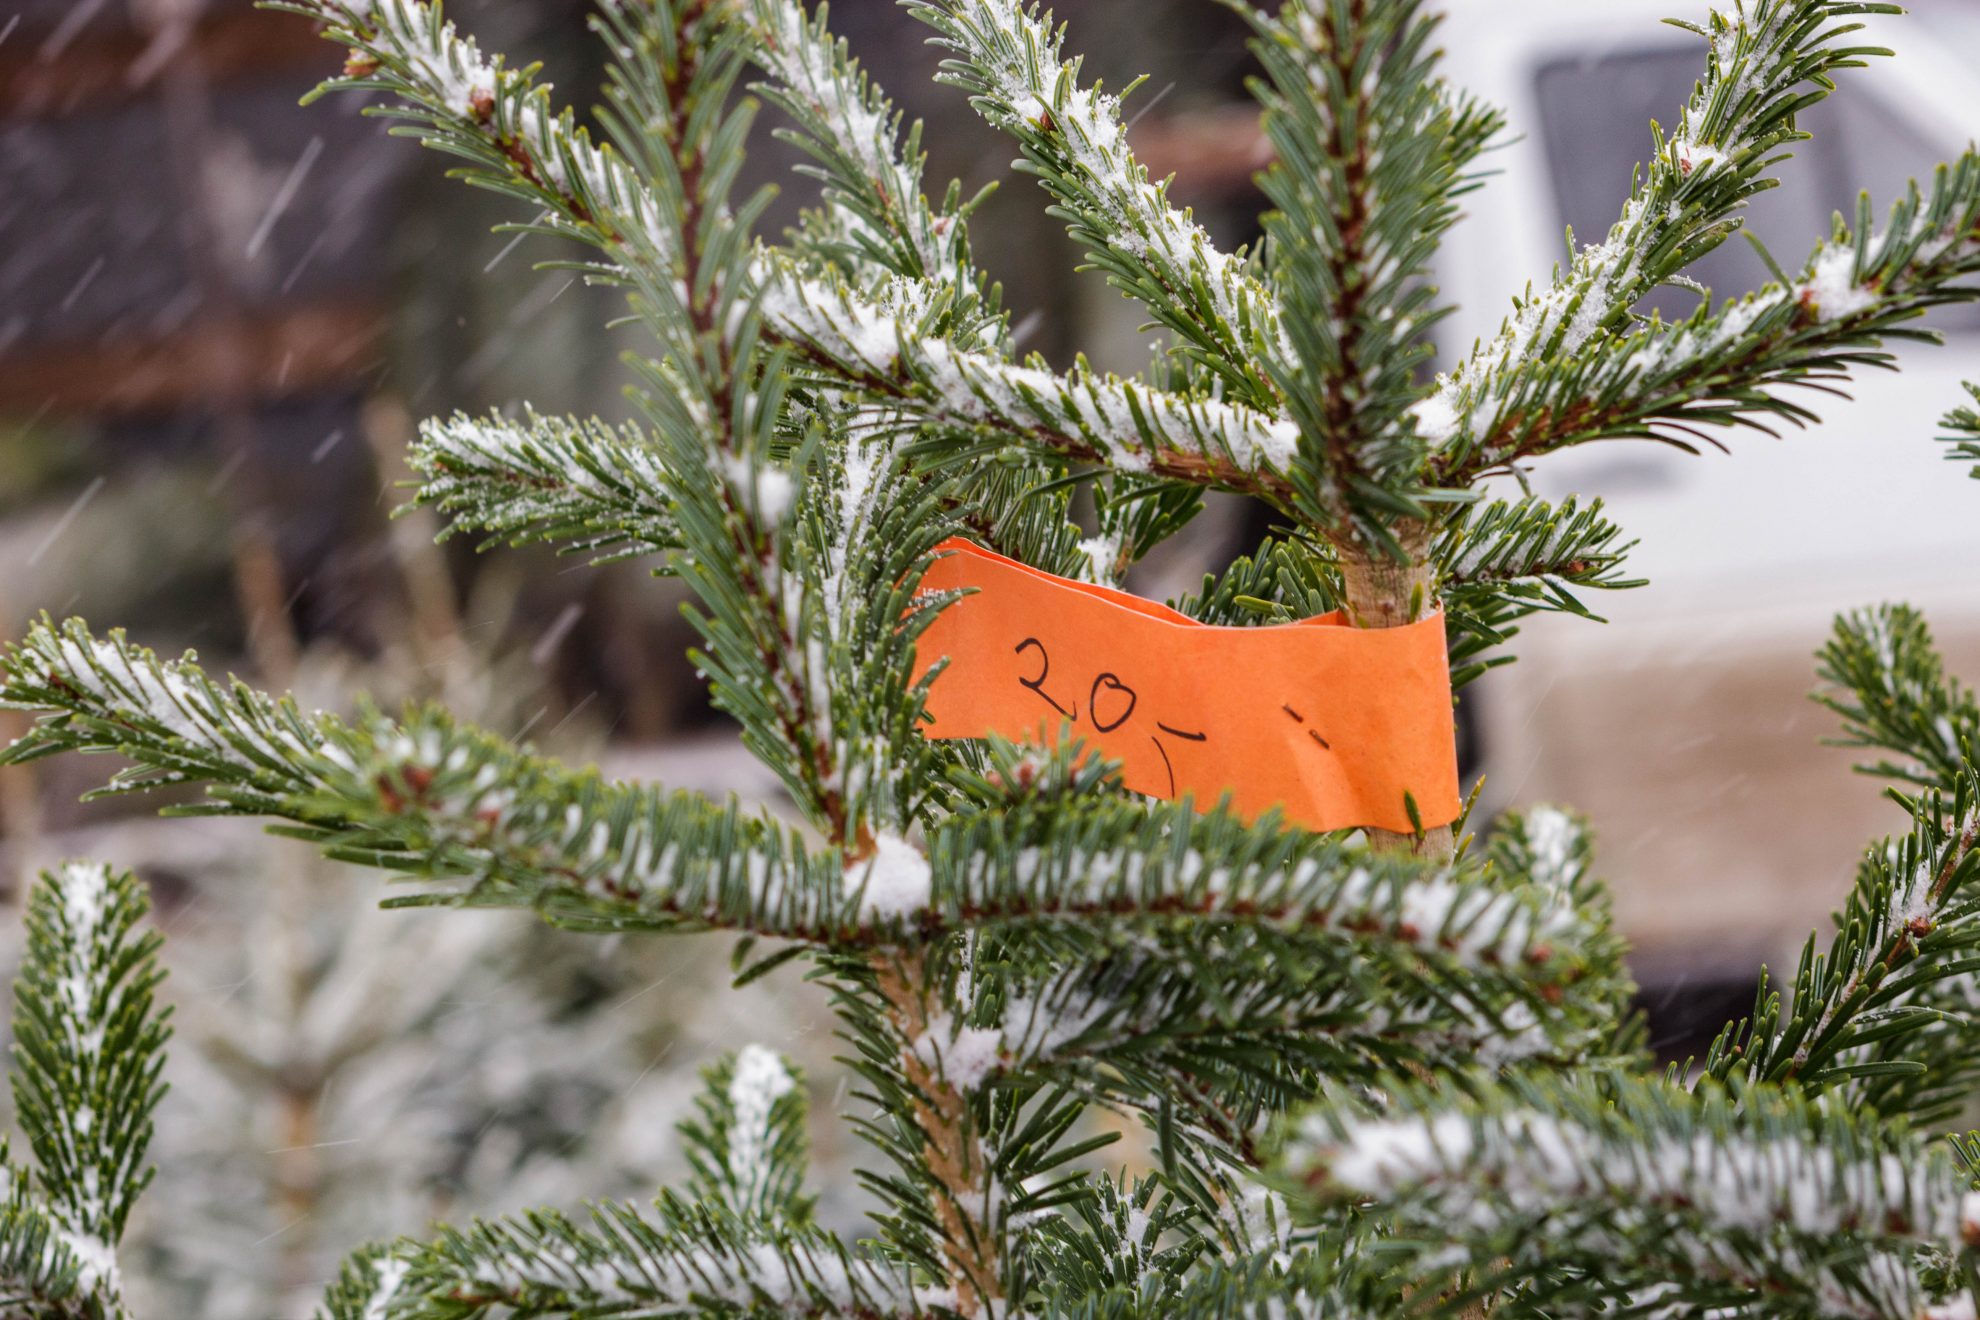 Nors kainos Lietuvoje nenumaldomai auga, miškininkai skelbia ruošiantys dovaną Kalėdoms – pigesnes nei pernai eglutes. Už papildomą mokestį jos bus supakuotos, bet pirkti Kalėdų eglės atėjusieji tik su grynaisiais piniginėje liks be puošmenos.